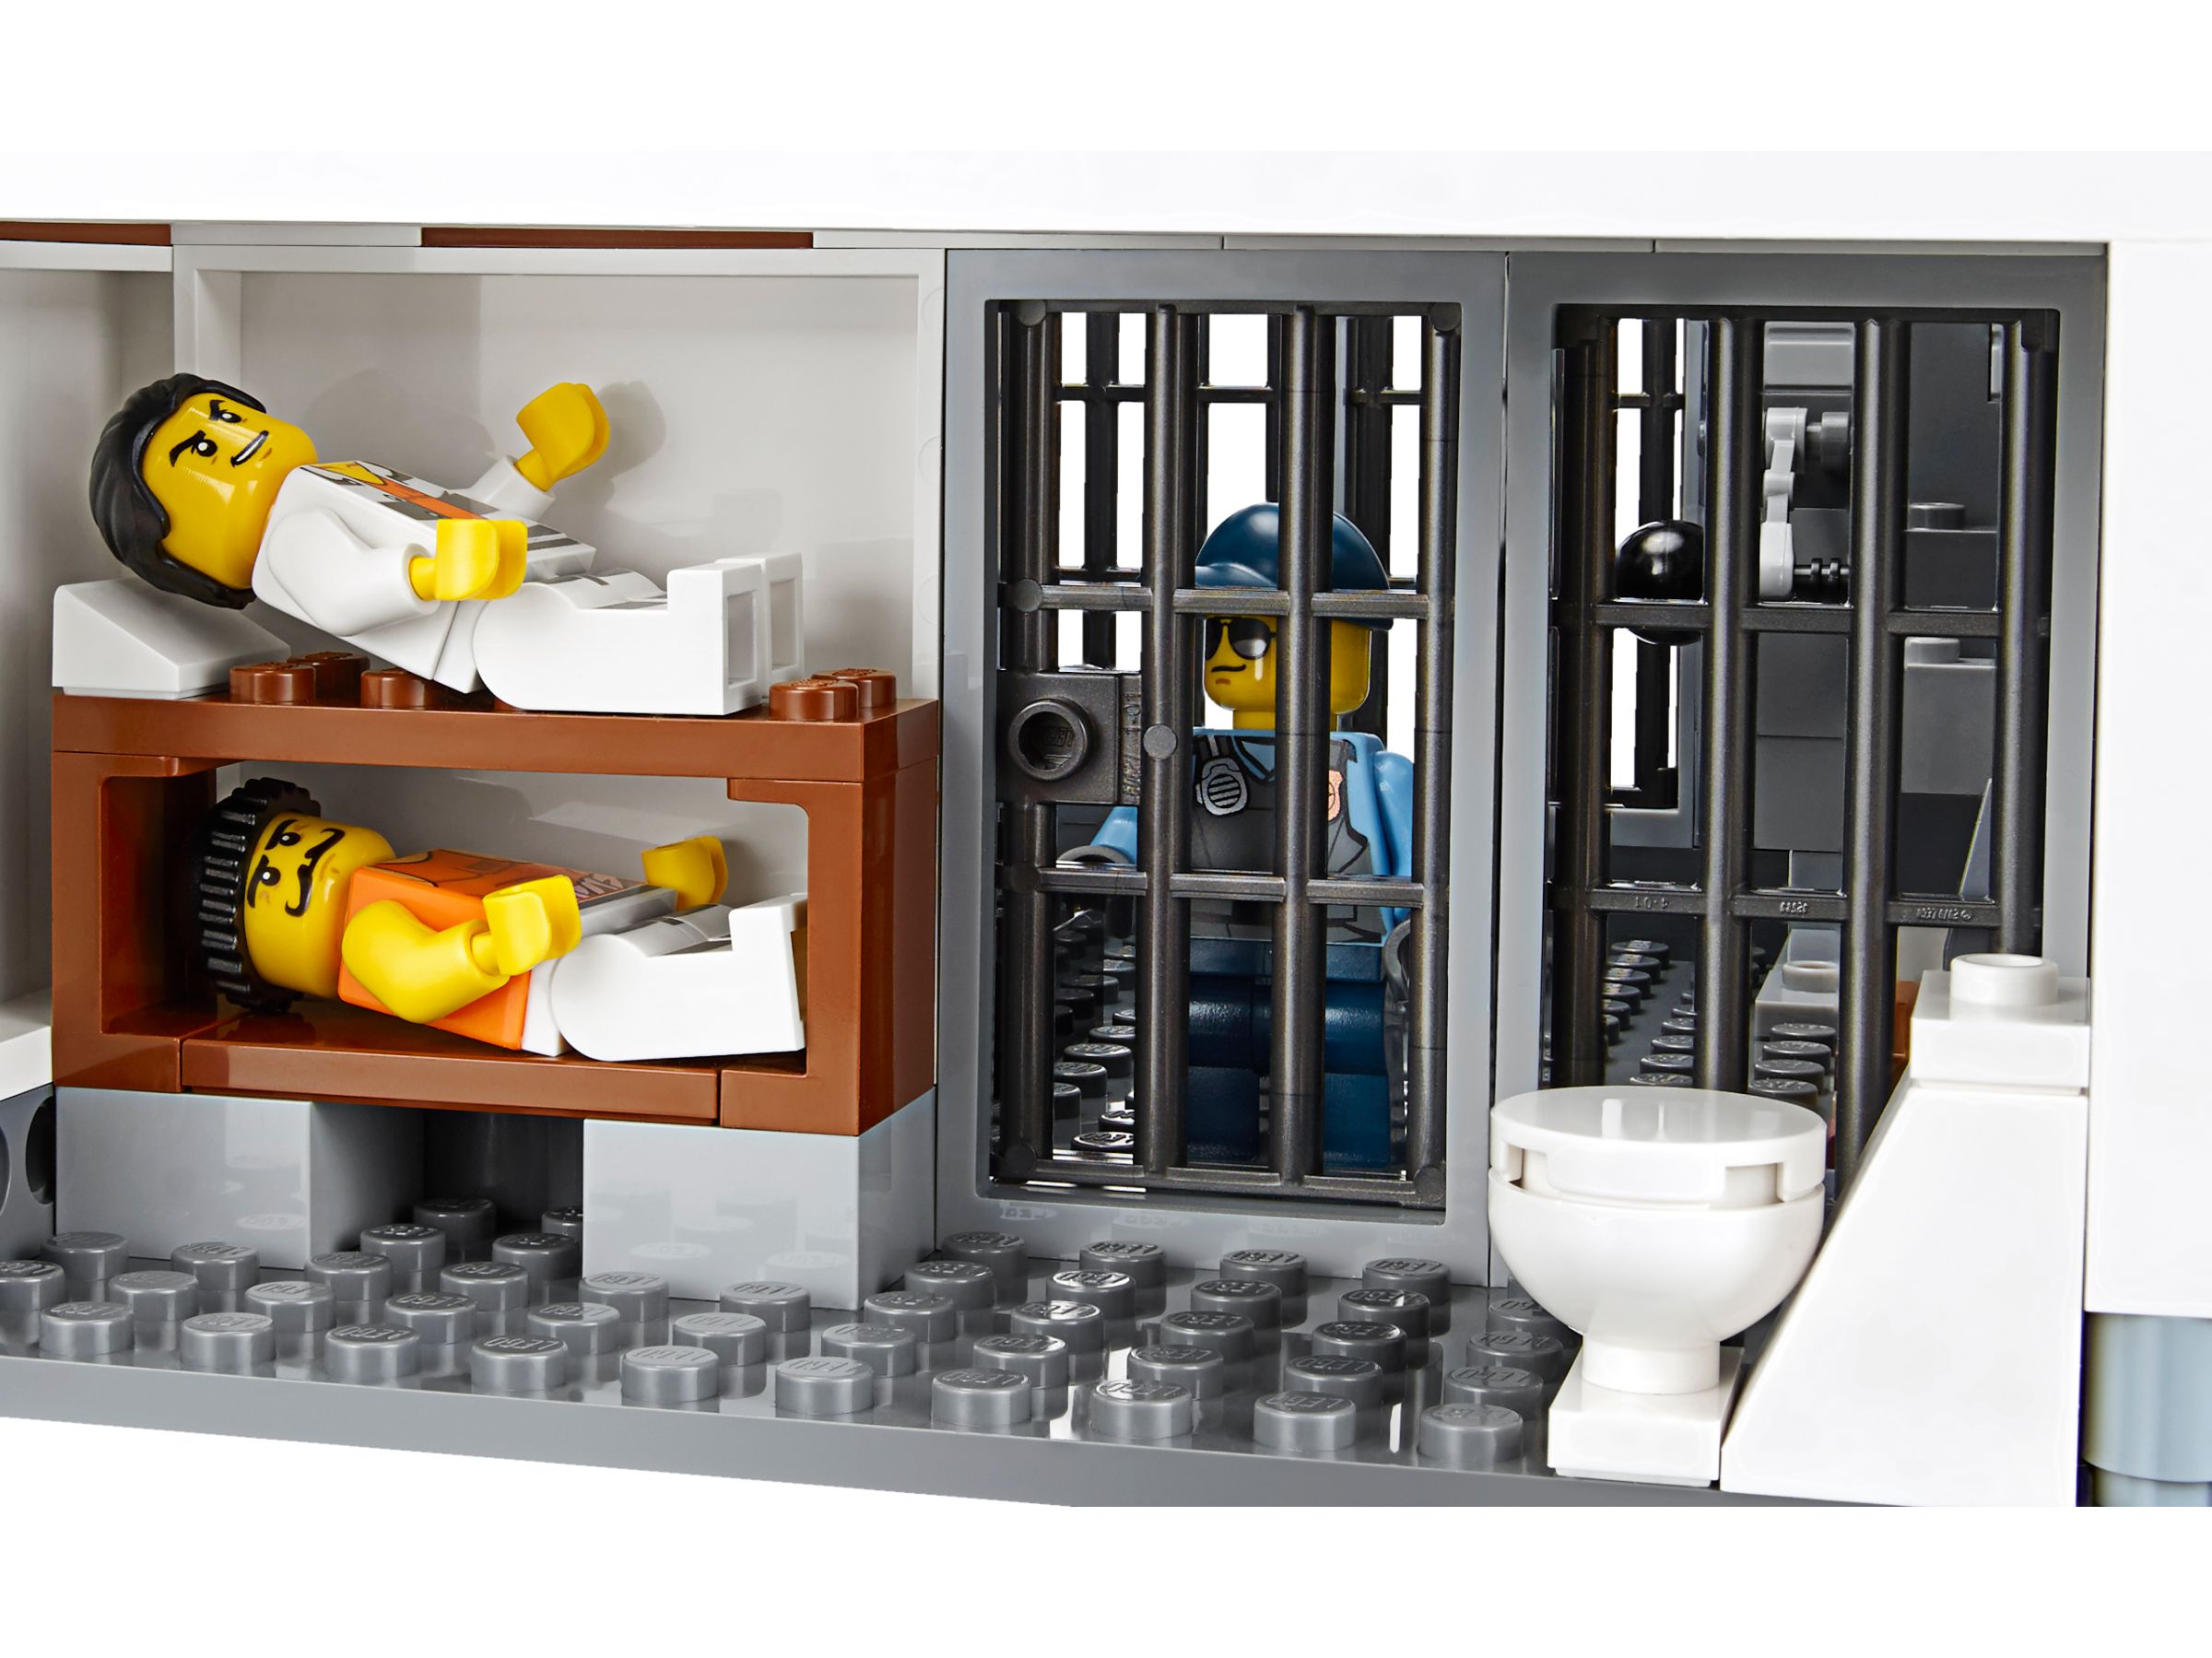 LEGO City 60130 Polizeiquartier auf der Gefängnisinsel LEGO_60130_alt7.jpg